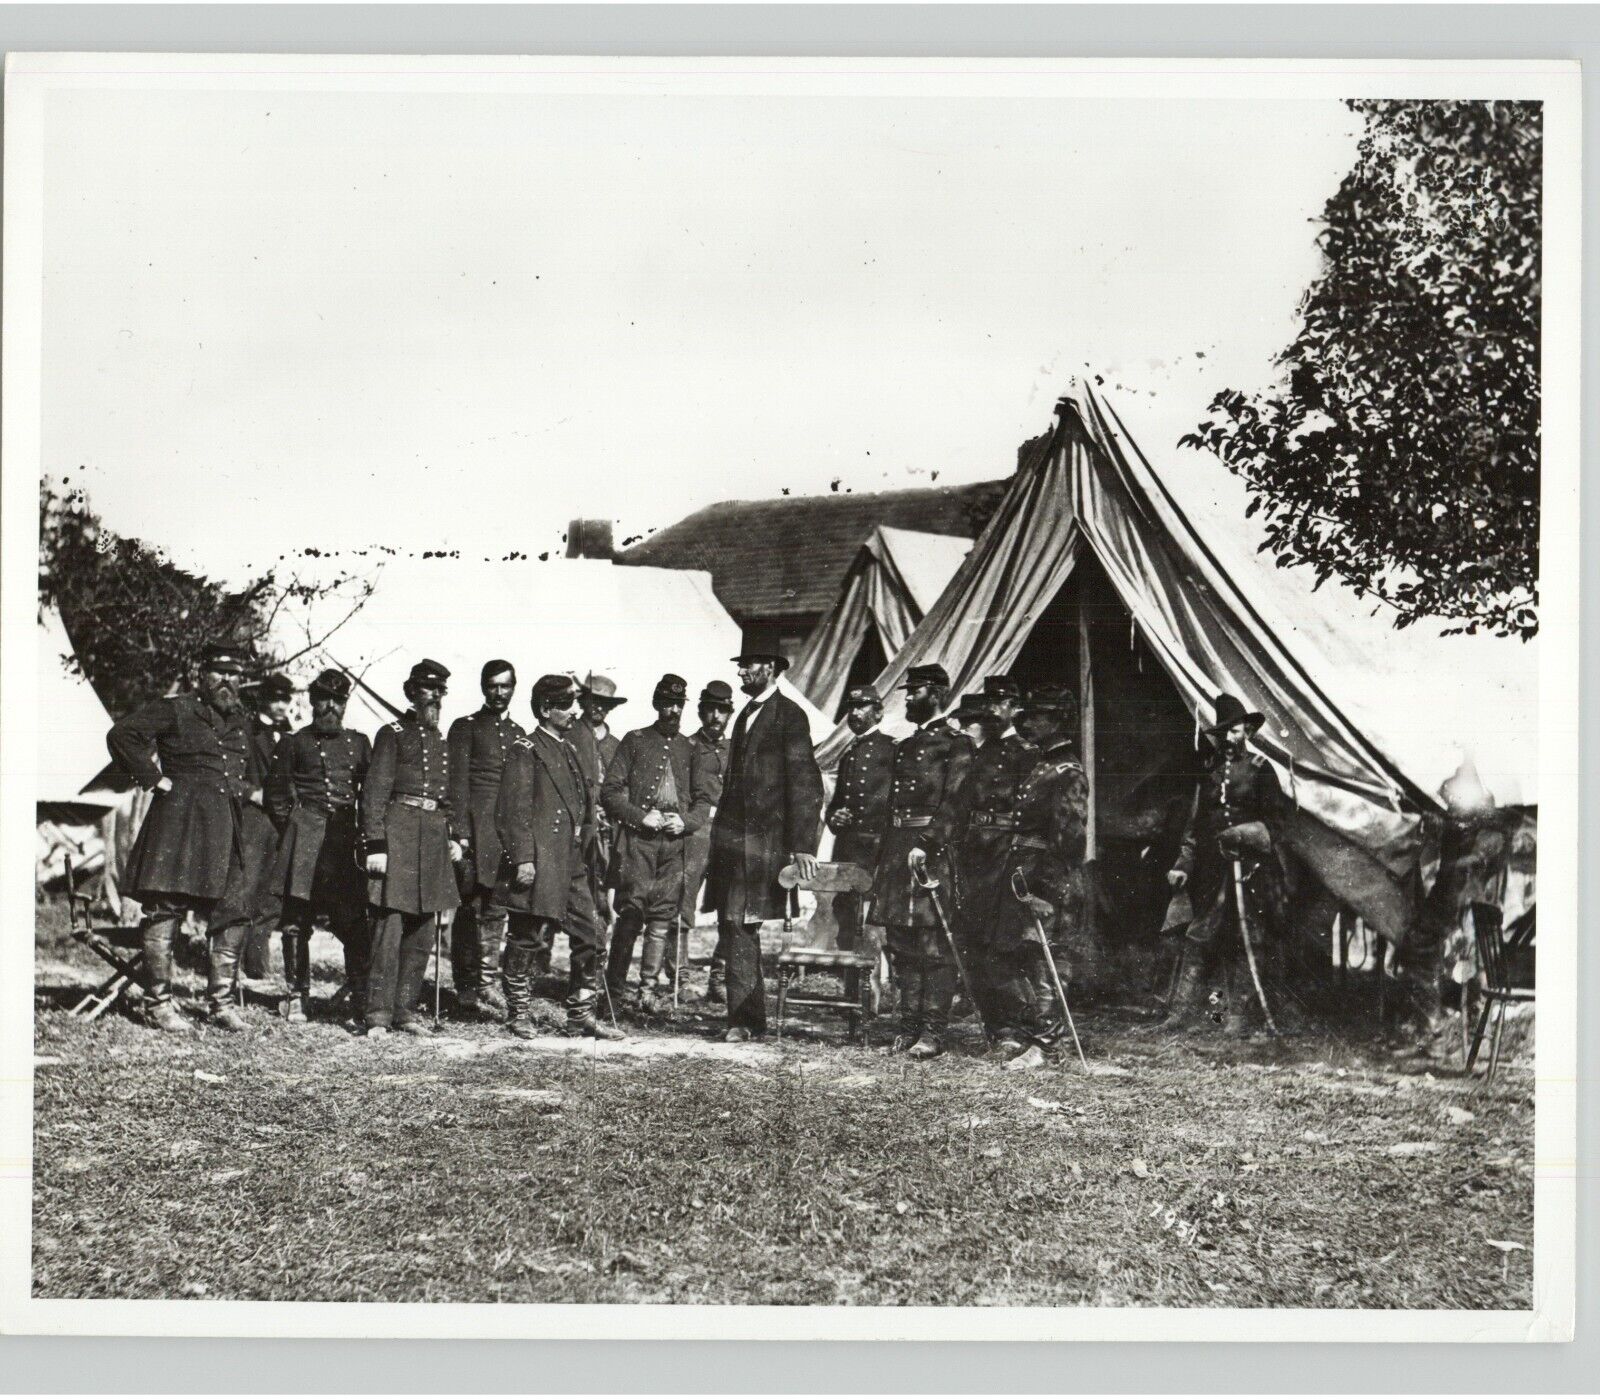 Press Photo LINCOLN w Soldiers CIVIL WAR Era Alexander Gardner 1862 Printd 1950s